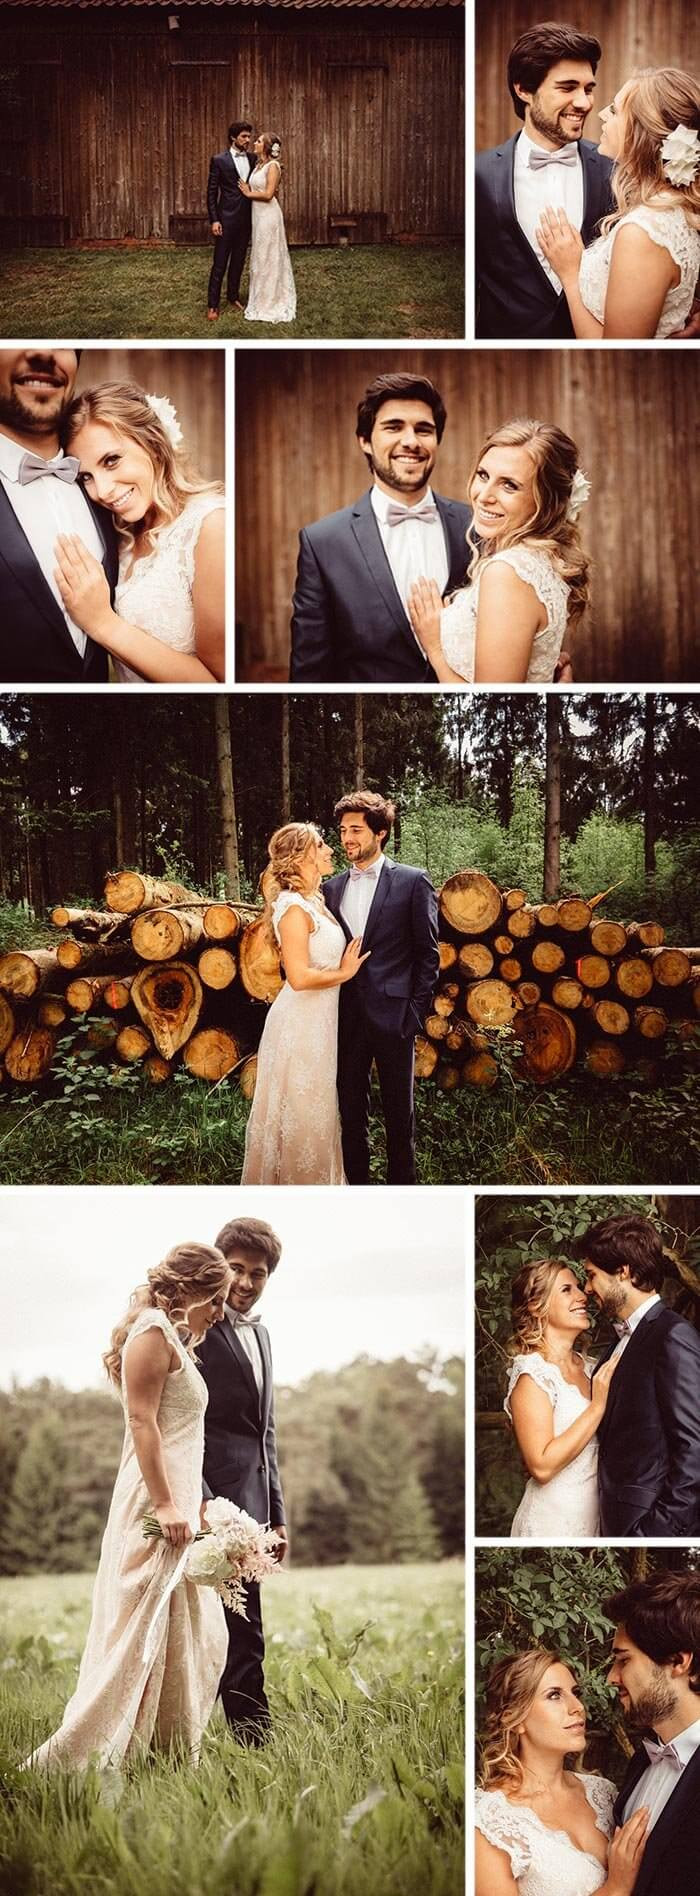 Kleine Hochzeit Ideen
 Kleine Hochzeit in der Natur Waldhochzeit mit elegantem Touch